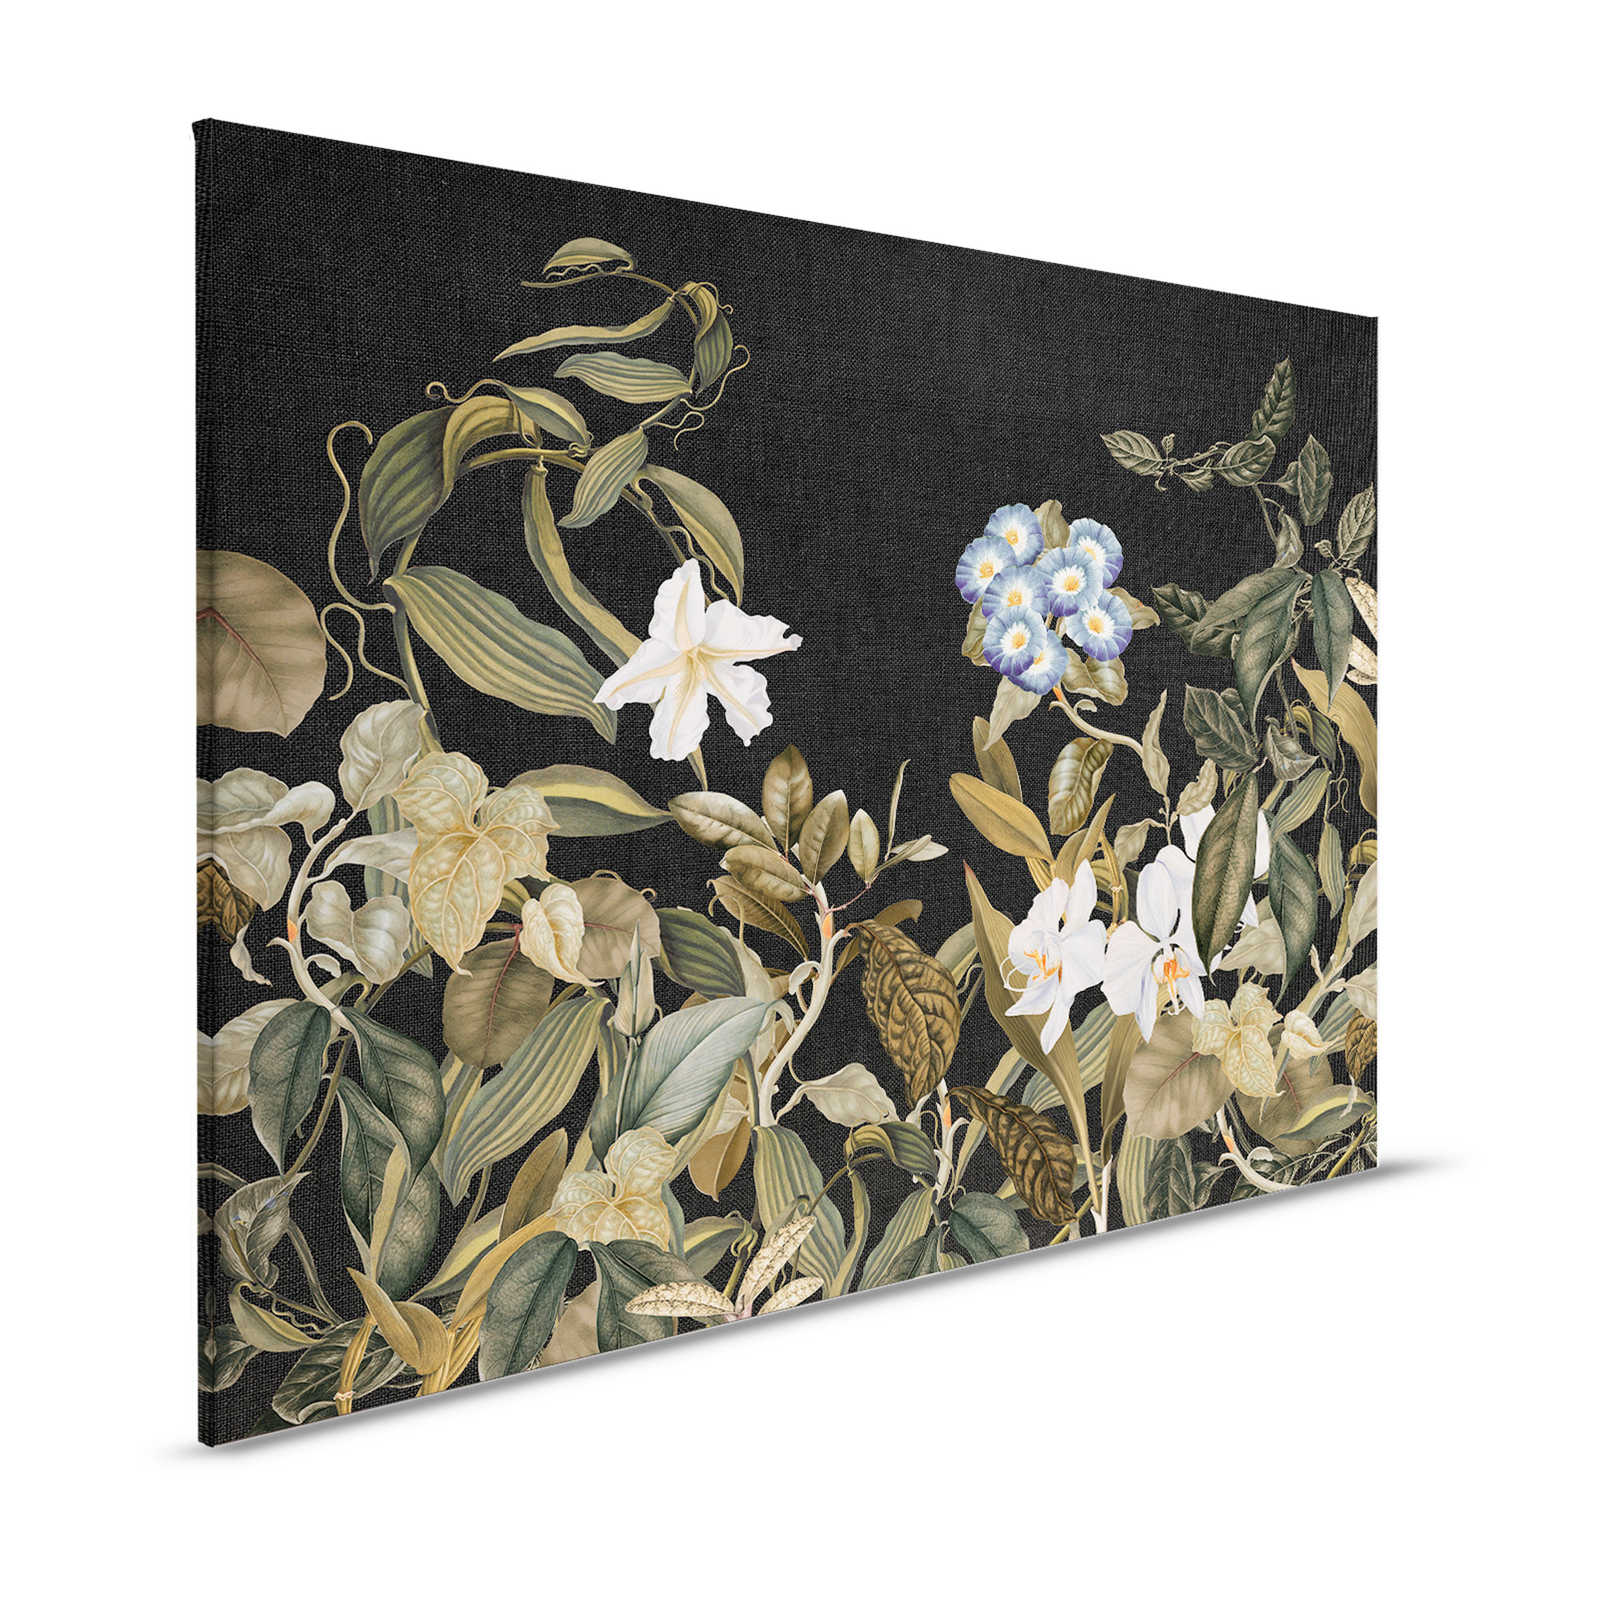         Botanical Leinwandbild mit Orchideen & Blätter-Motiv – 1,20 m x 0,80 m
    